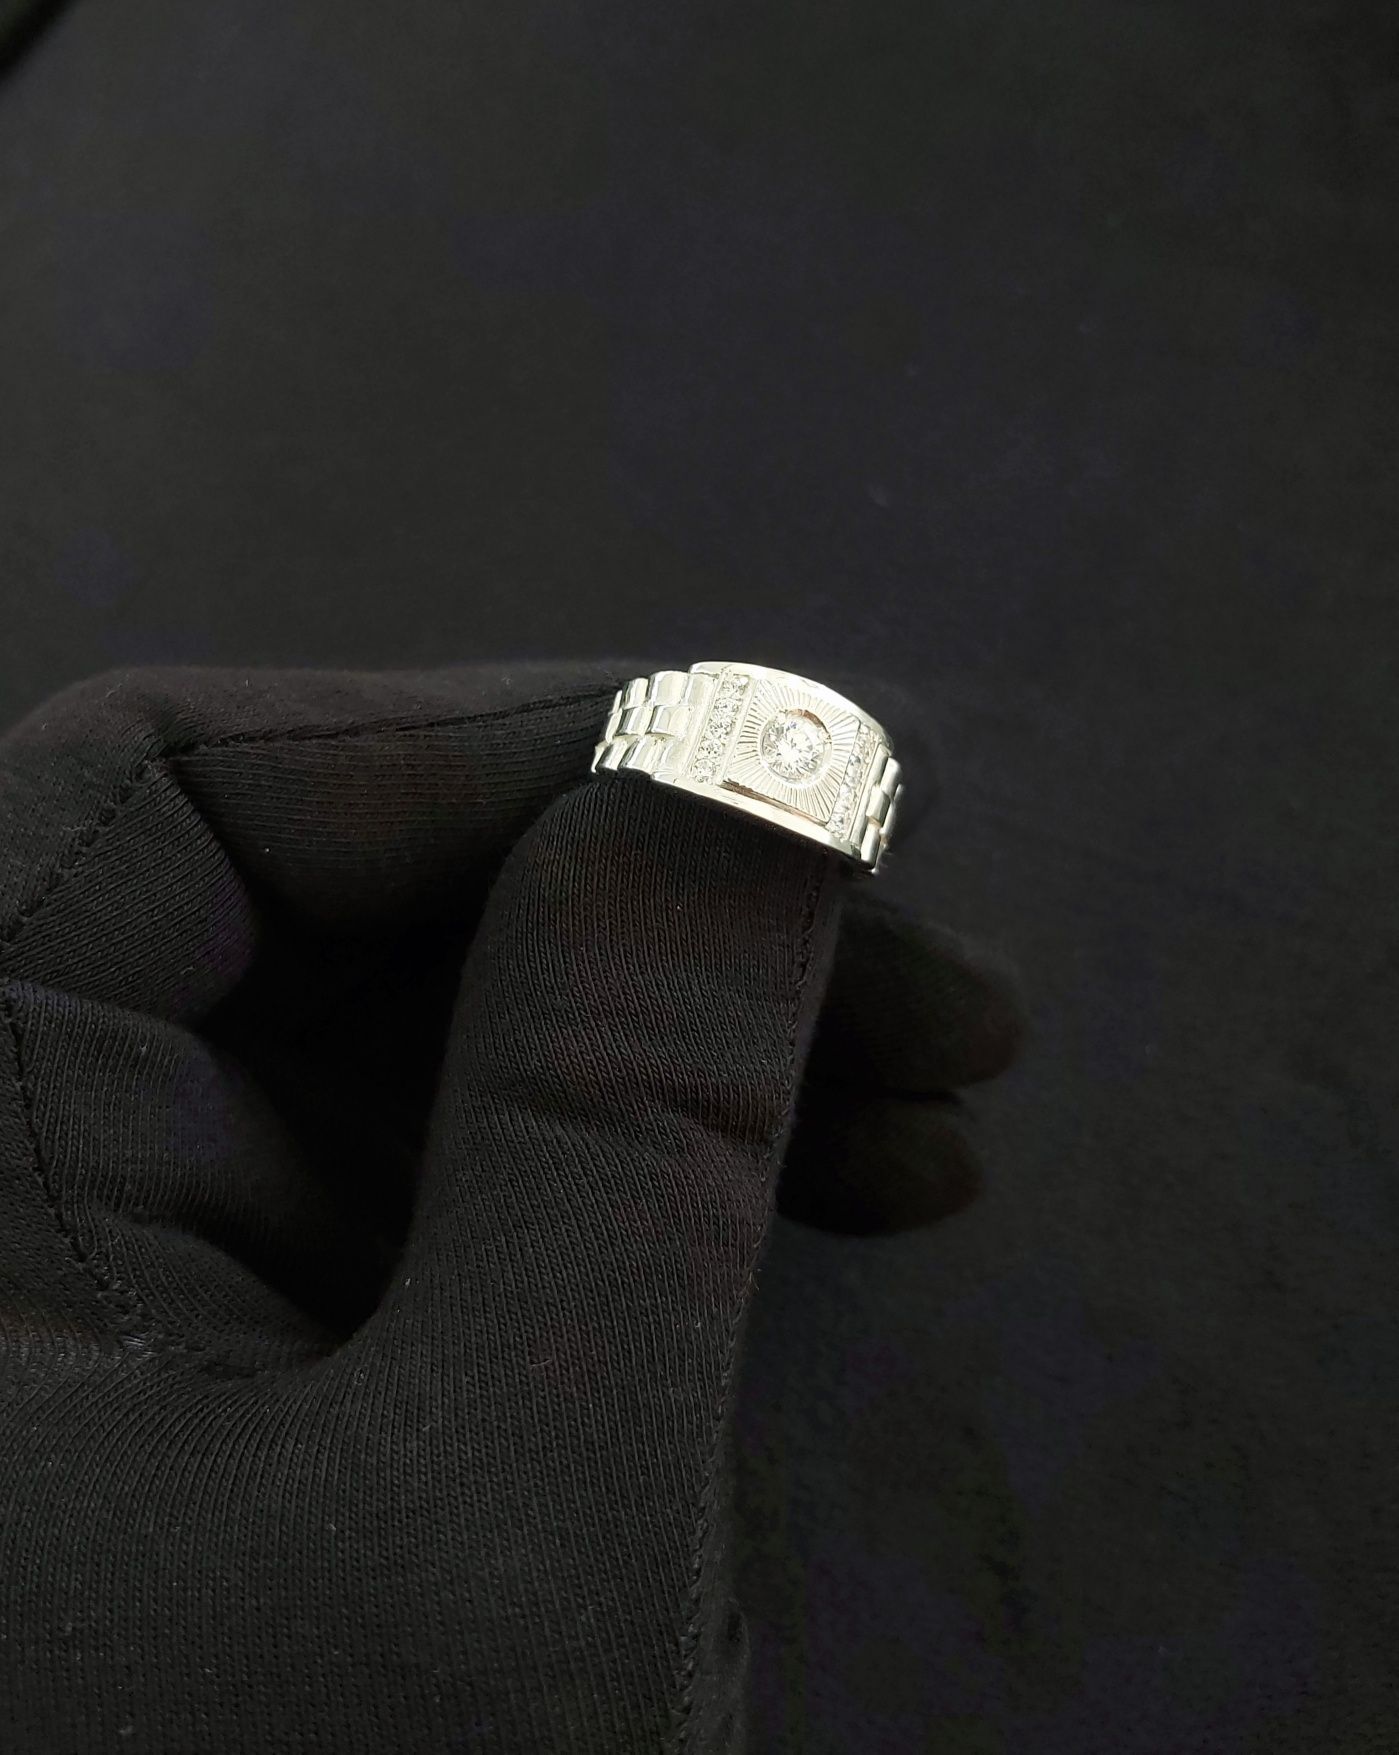 Kumush uzuk перстень никох узуги серебро обручалка пара идеал подарки